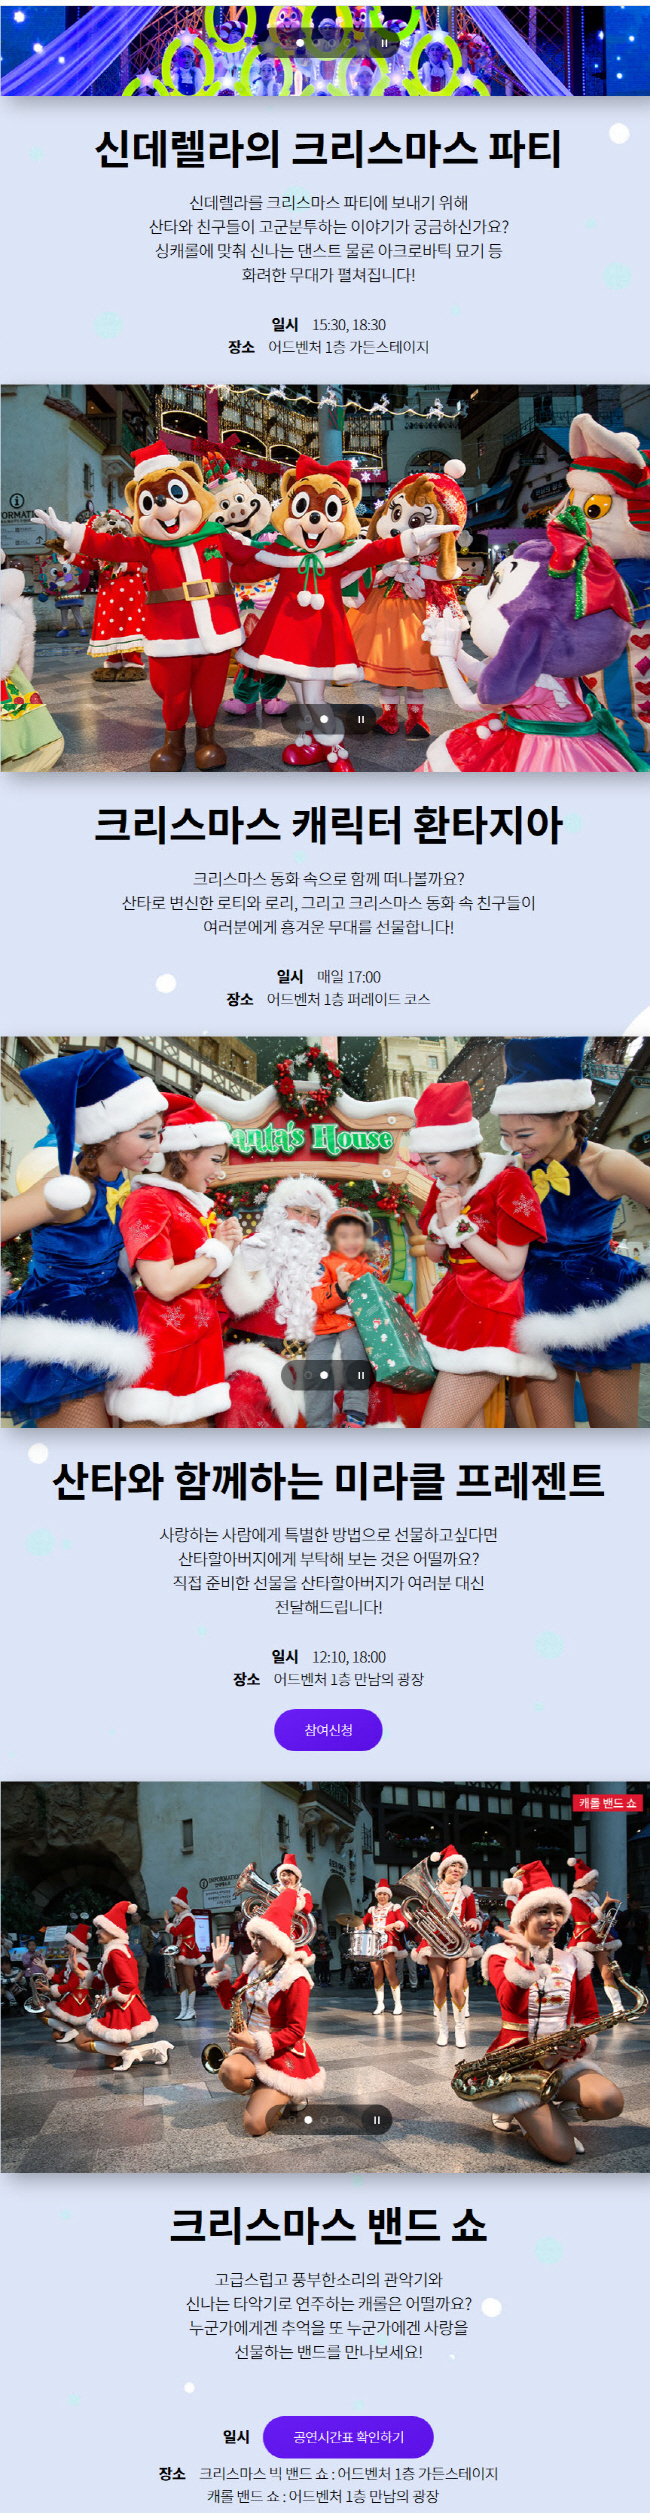 [이벤트] 실내테마파크 <롯데월드, 아쿠아리움> 12월 특별 할인초청(18-0206)